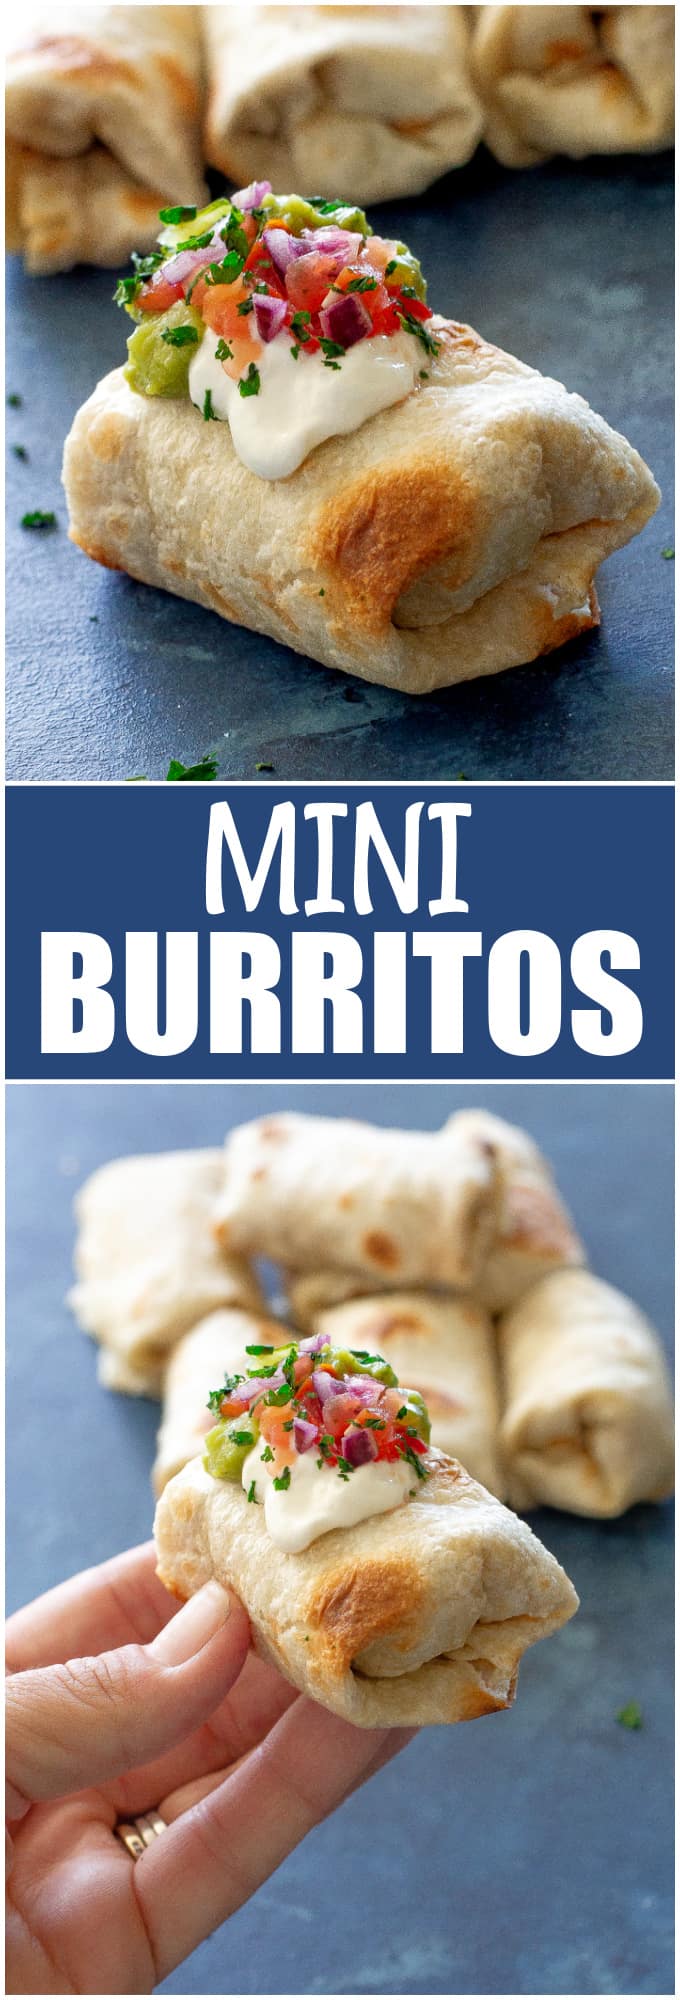 mini burritos